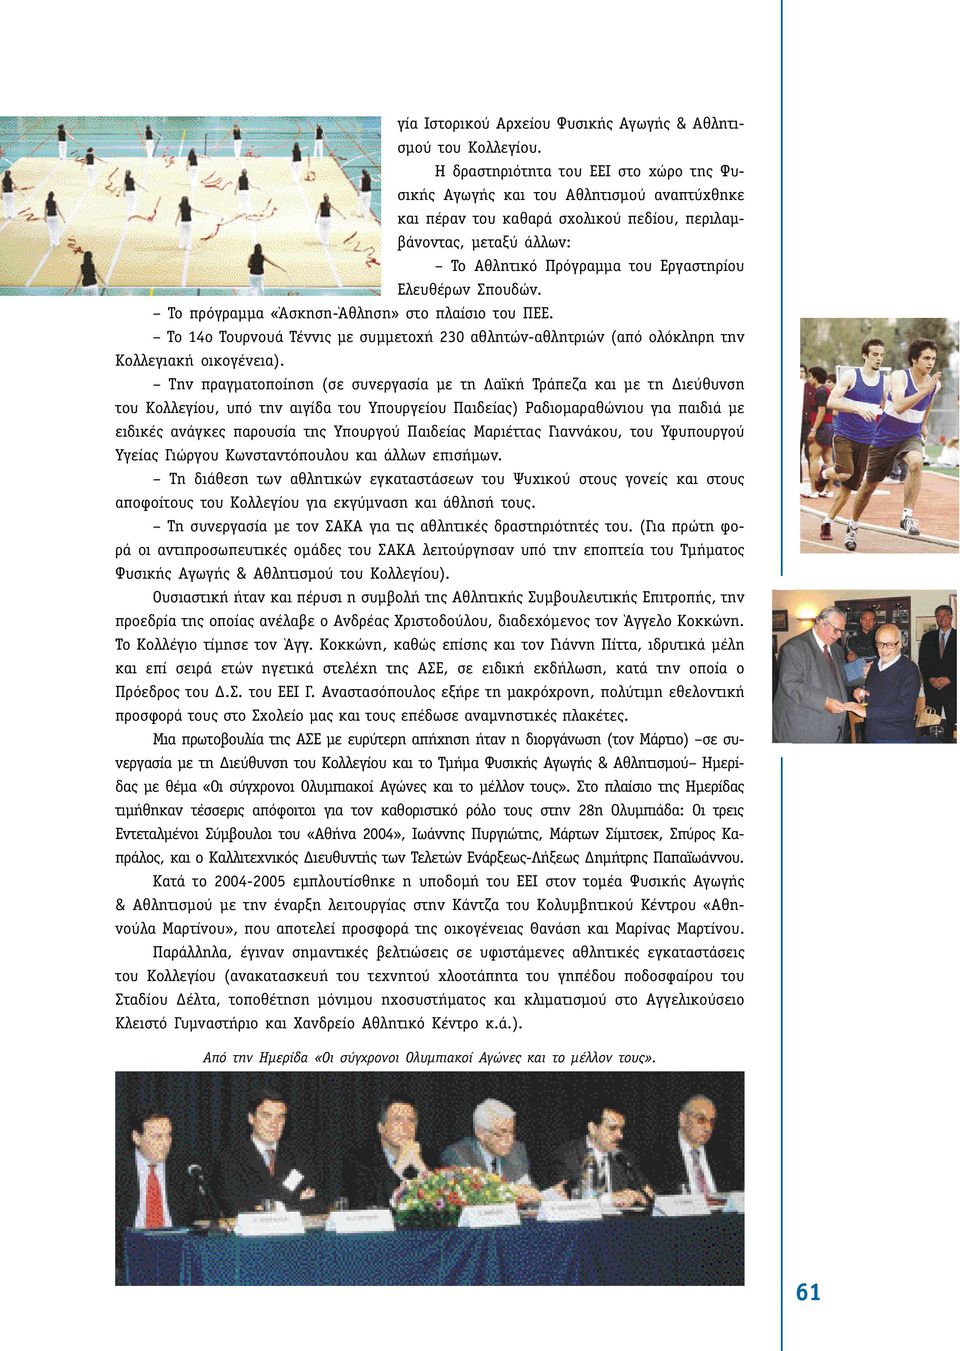 Σπουδών. Το πρόγραµµα «Άσκηση-Άθληση» στο πλαίσιο του ΠΕΕ. Το 14ο Τουρνουά Τέννις µε συµµετοχή 230 αθλητών-αθλητριών (από ολόκληρη την Κολλεγιακή οικογένεια).